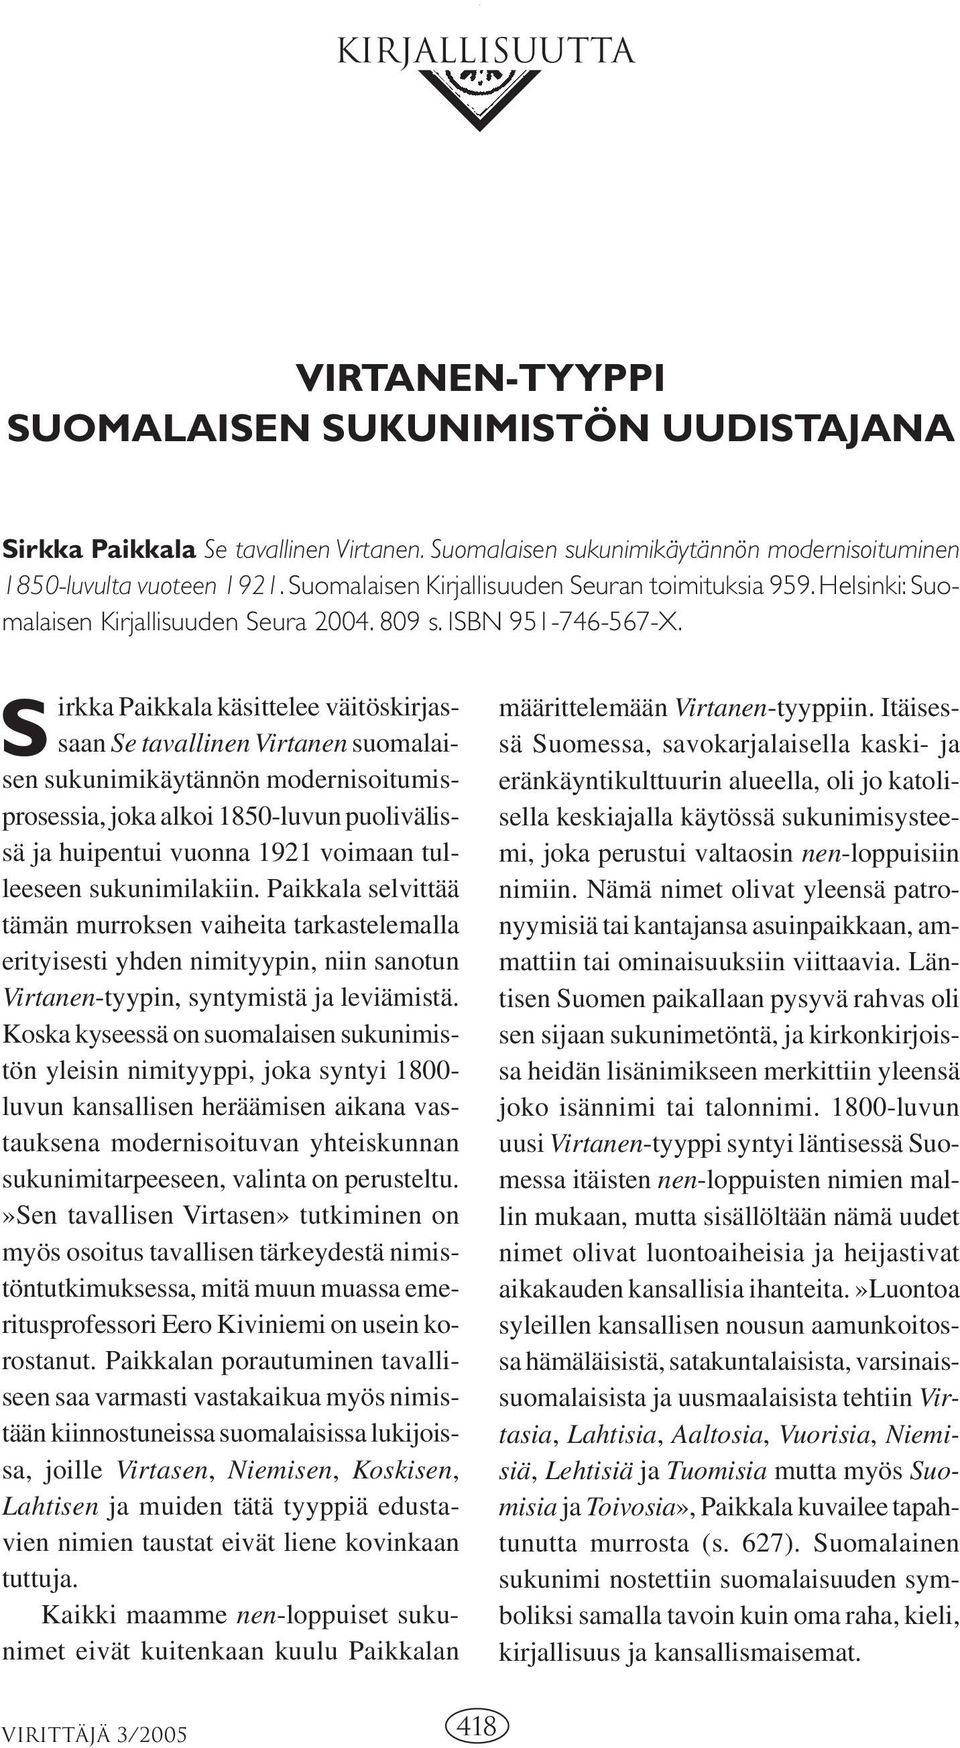 S irkka Paikkala käsittelee väitöskirjassaan Se tavallinen Virtanen suomalaisen sukunimikäytännön modernisoitumisprosessia, joka alkoi 1850-luvun puolivälissä ja huipentui vuonna 1921 voimaan